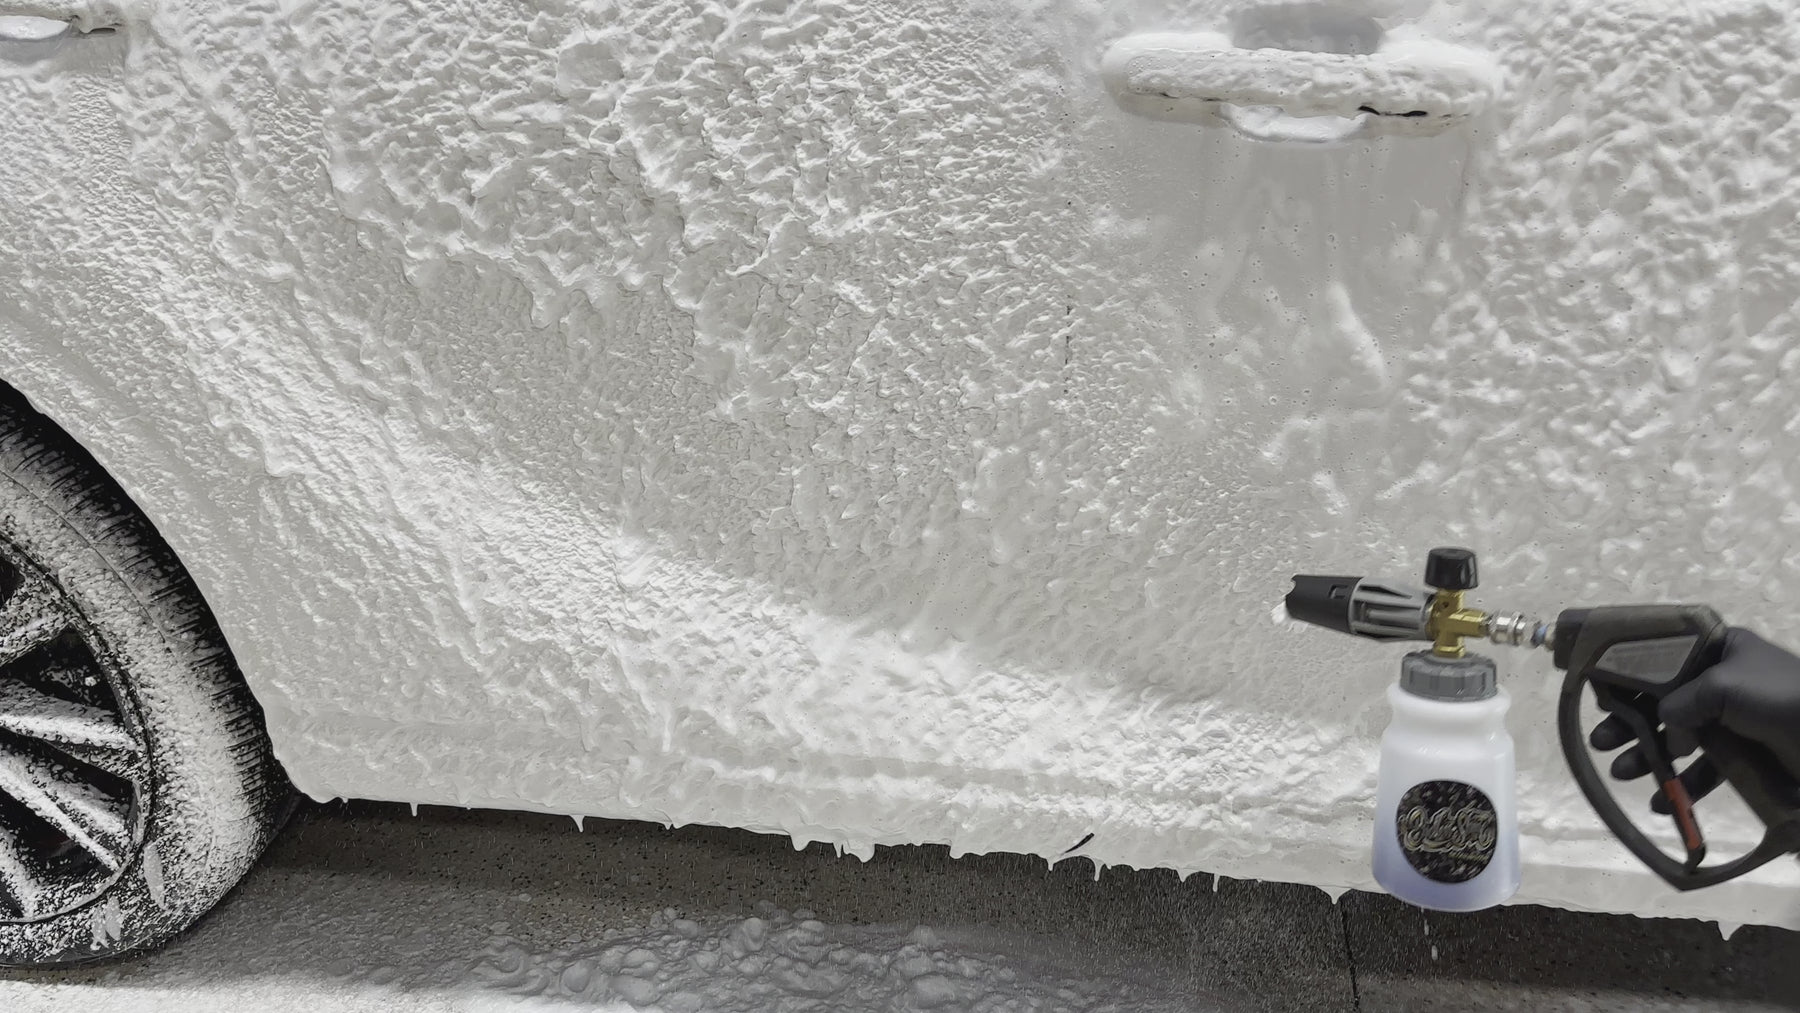 Foam Blizzard Plus™ Foam Cannon Soap